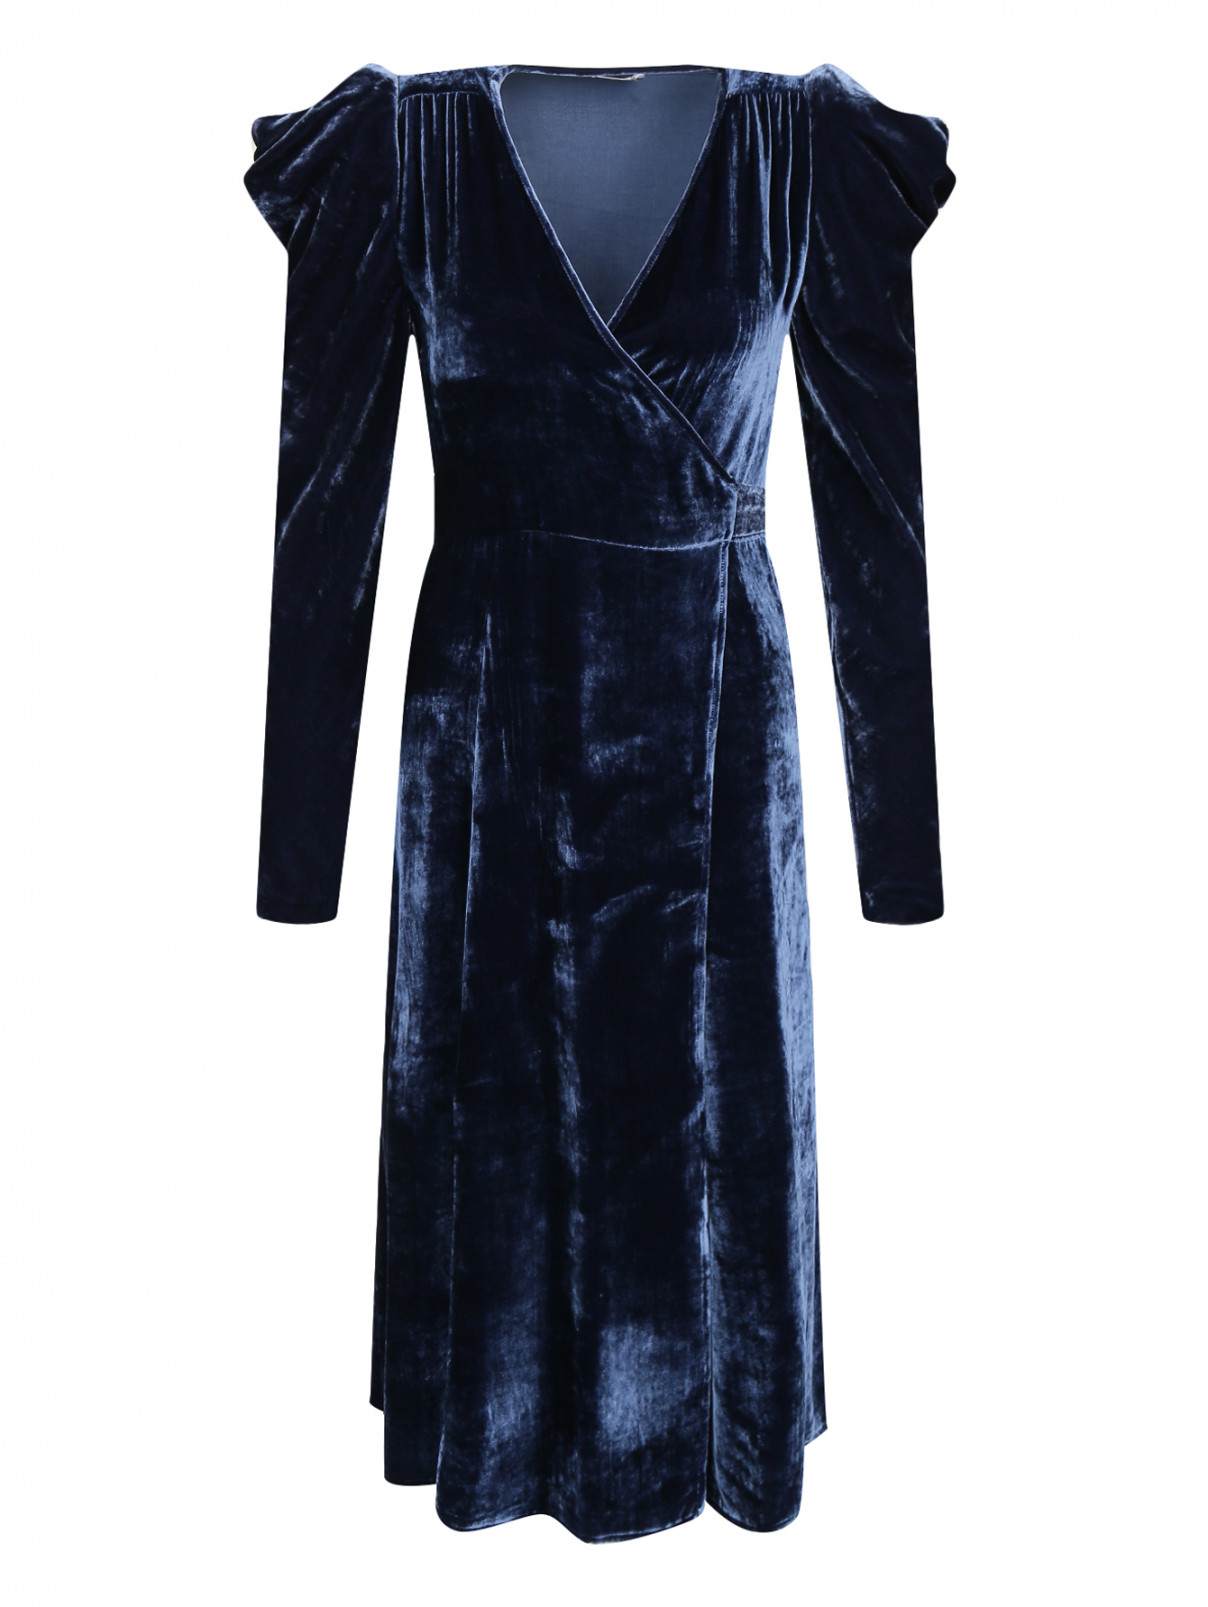 Бархатное платье с запахом P.A.R.O.S.H.  –  Общий вид  – Цвет:  Синий